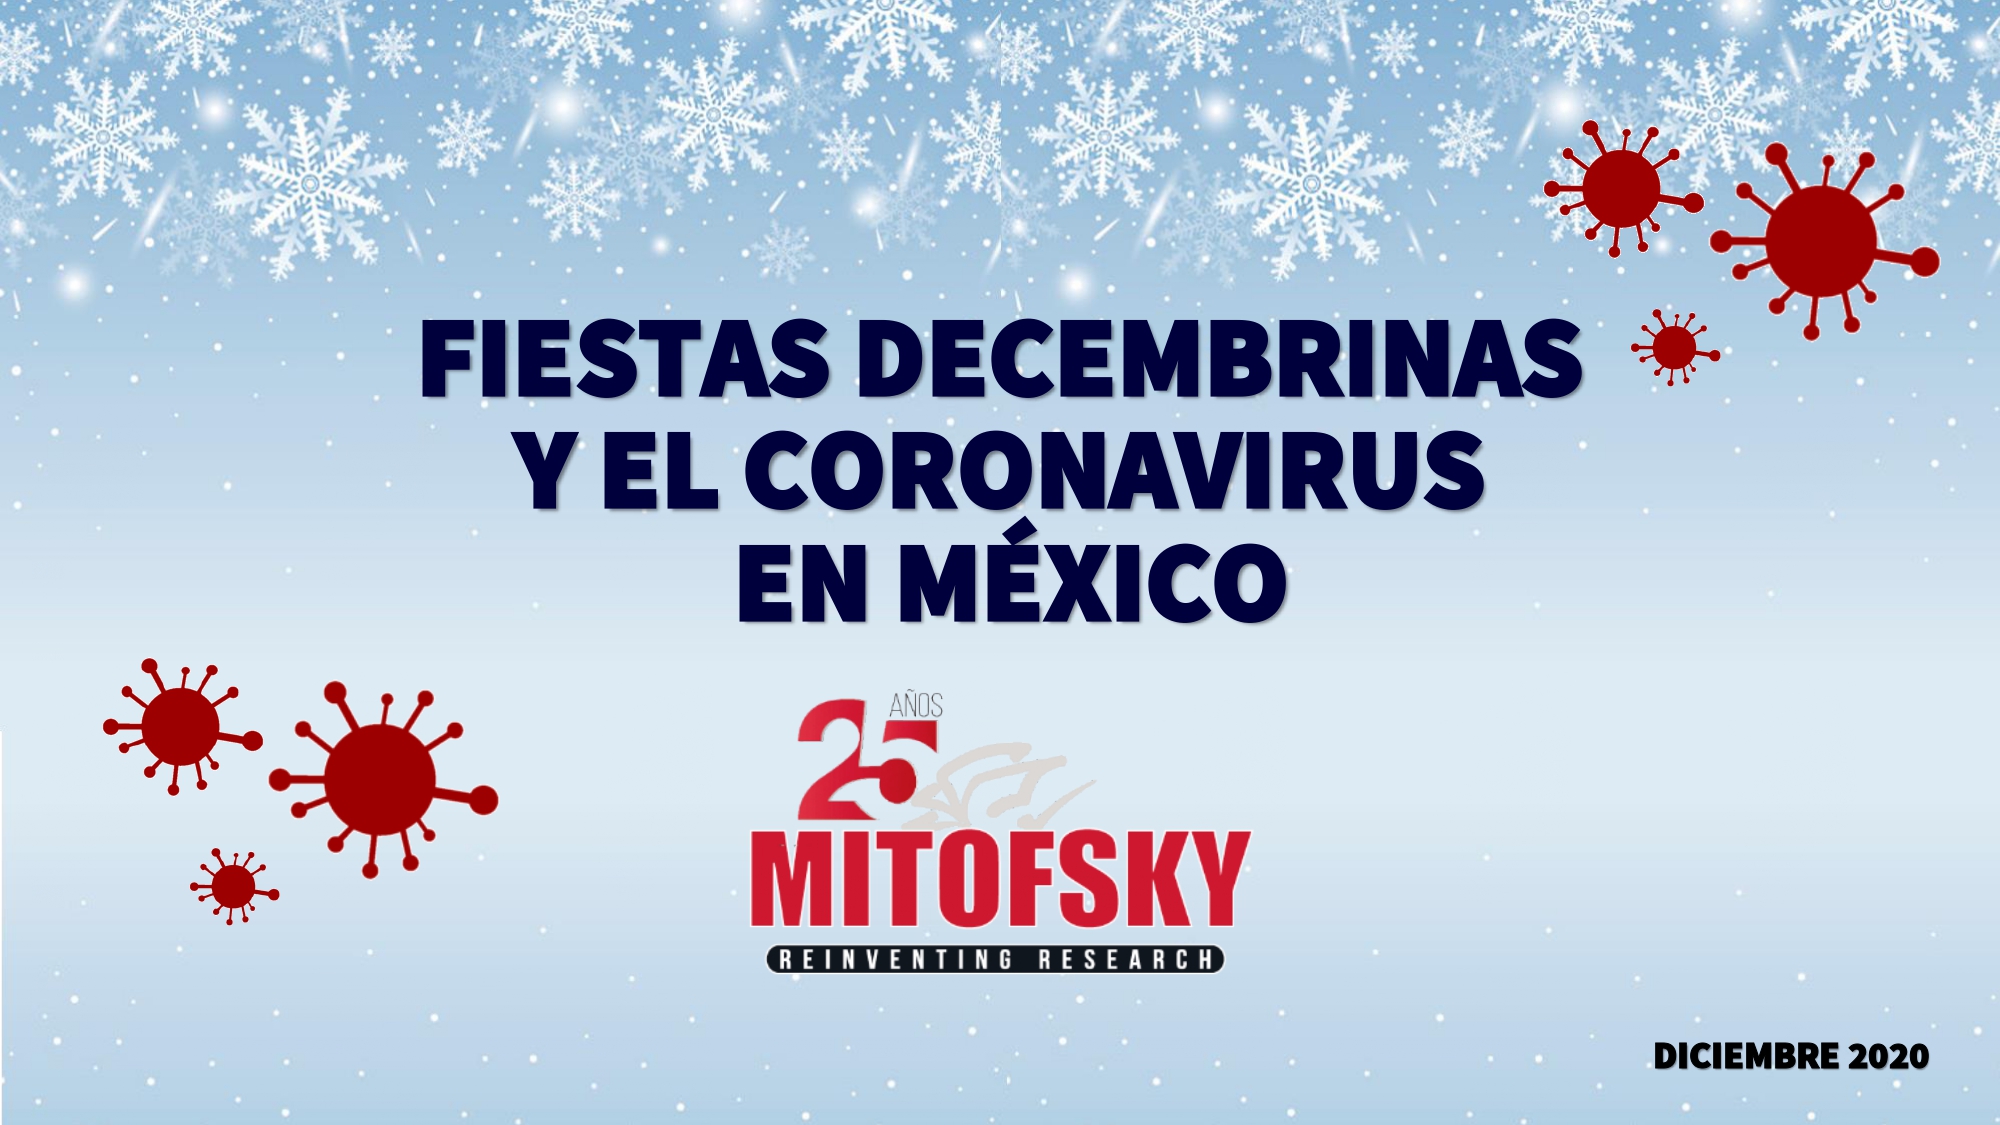 Festejos decembrinos ante el covid-19: Muchos mexicanos siguen sin creer en la crisis sanitaria y festejarán Año Nuevo como siempre, advirtió Consulta Mitofsky